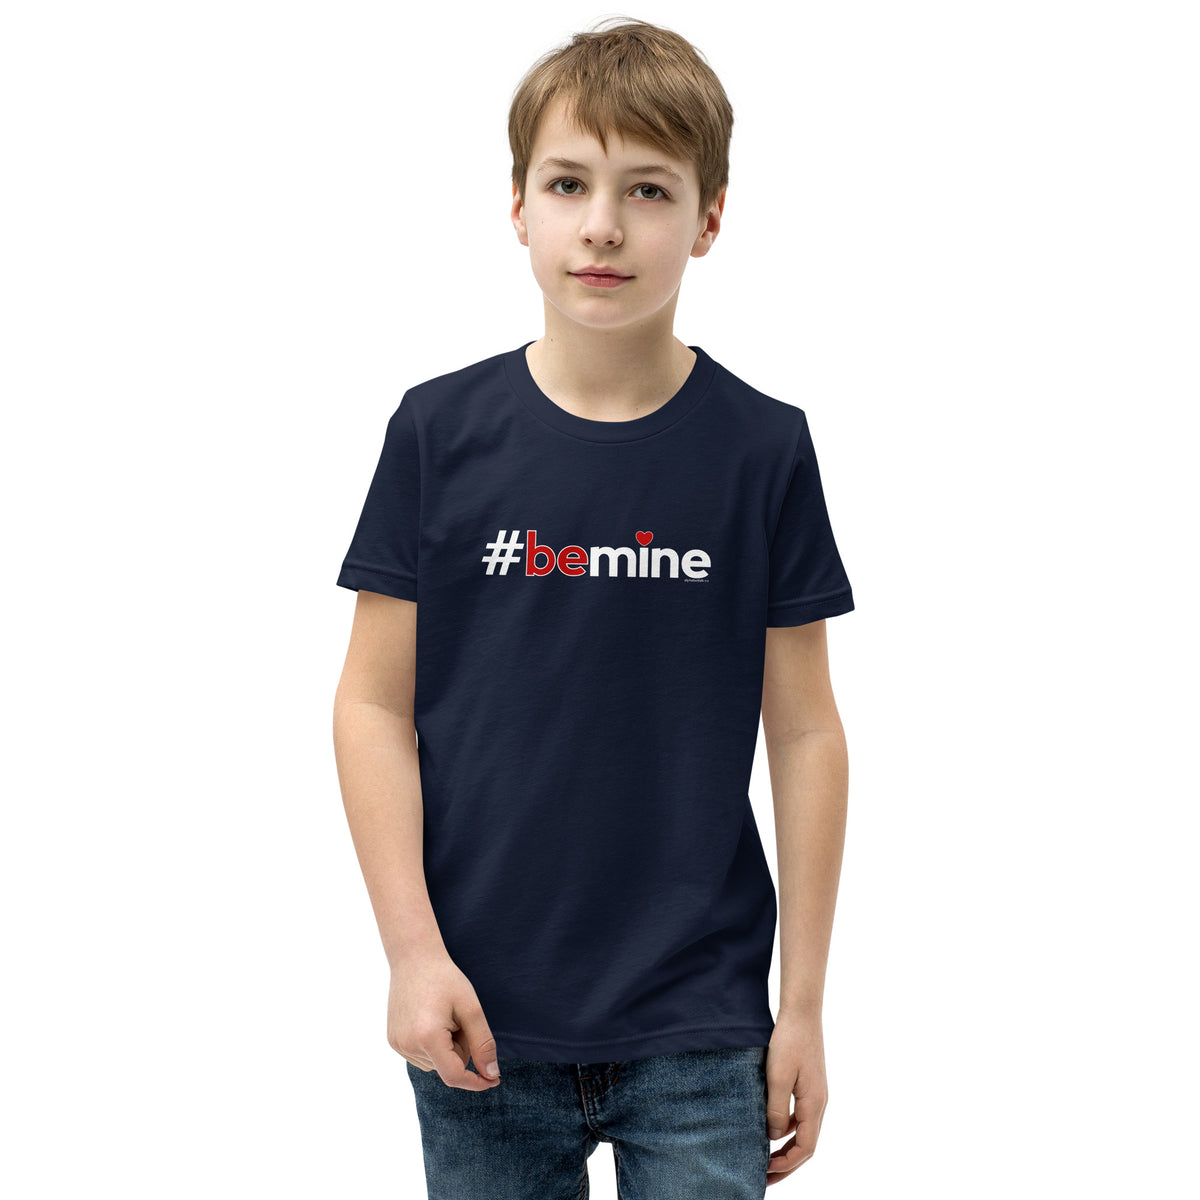 Hashtag Be Mine Kids Valentine’s Day T-Shirt